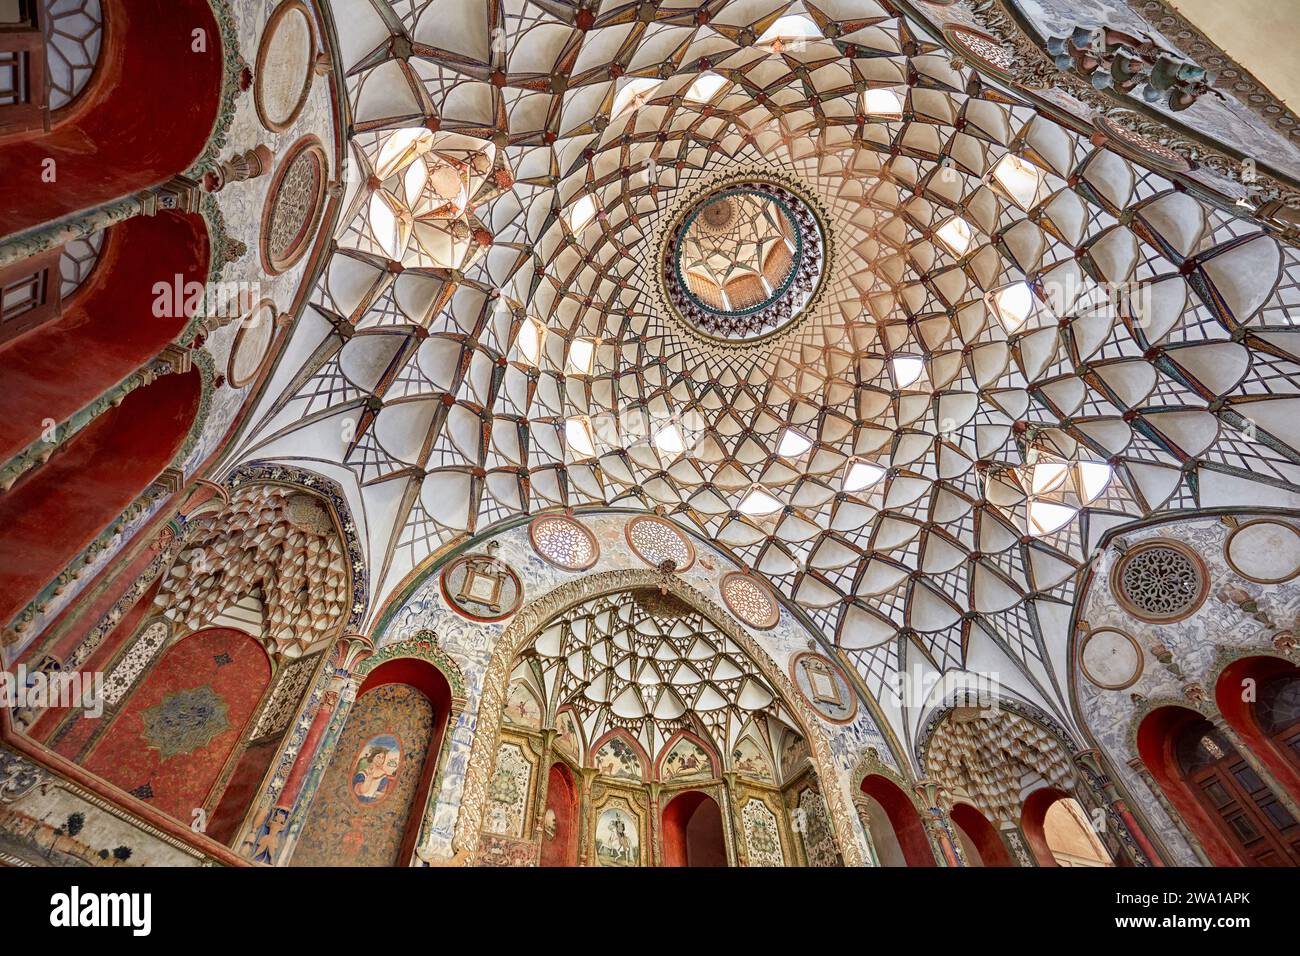 Reich dekorierte Kuppeldecke der Haupthalle im Borujerdi House, traditionelles, reiches persisches Haus aus dem Jahr 1857. Kaschan, Iran. Stockfoto